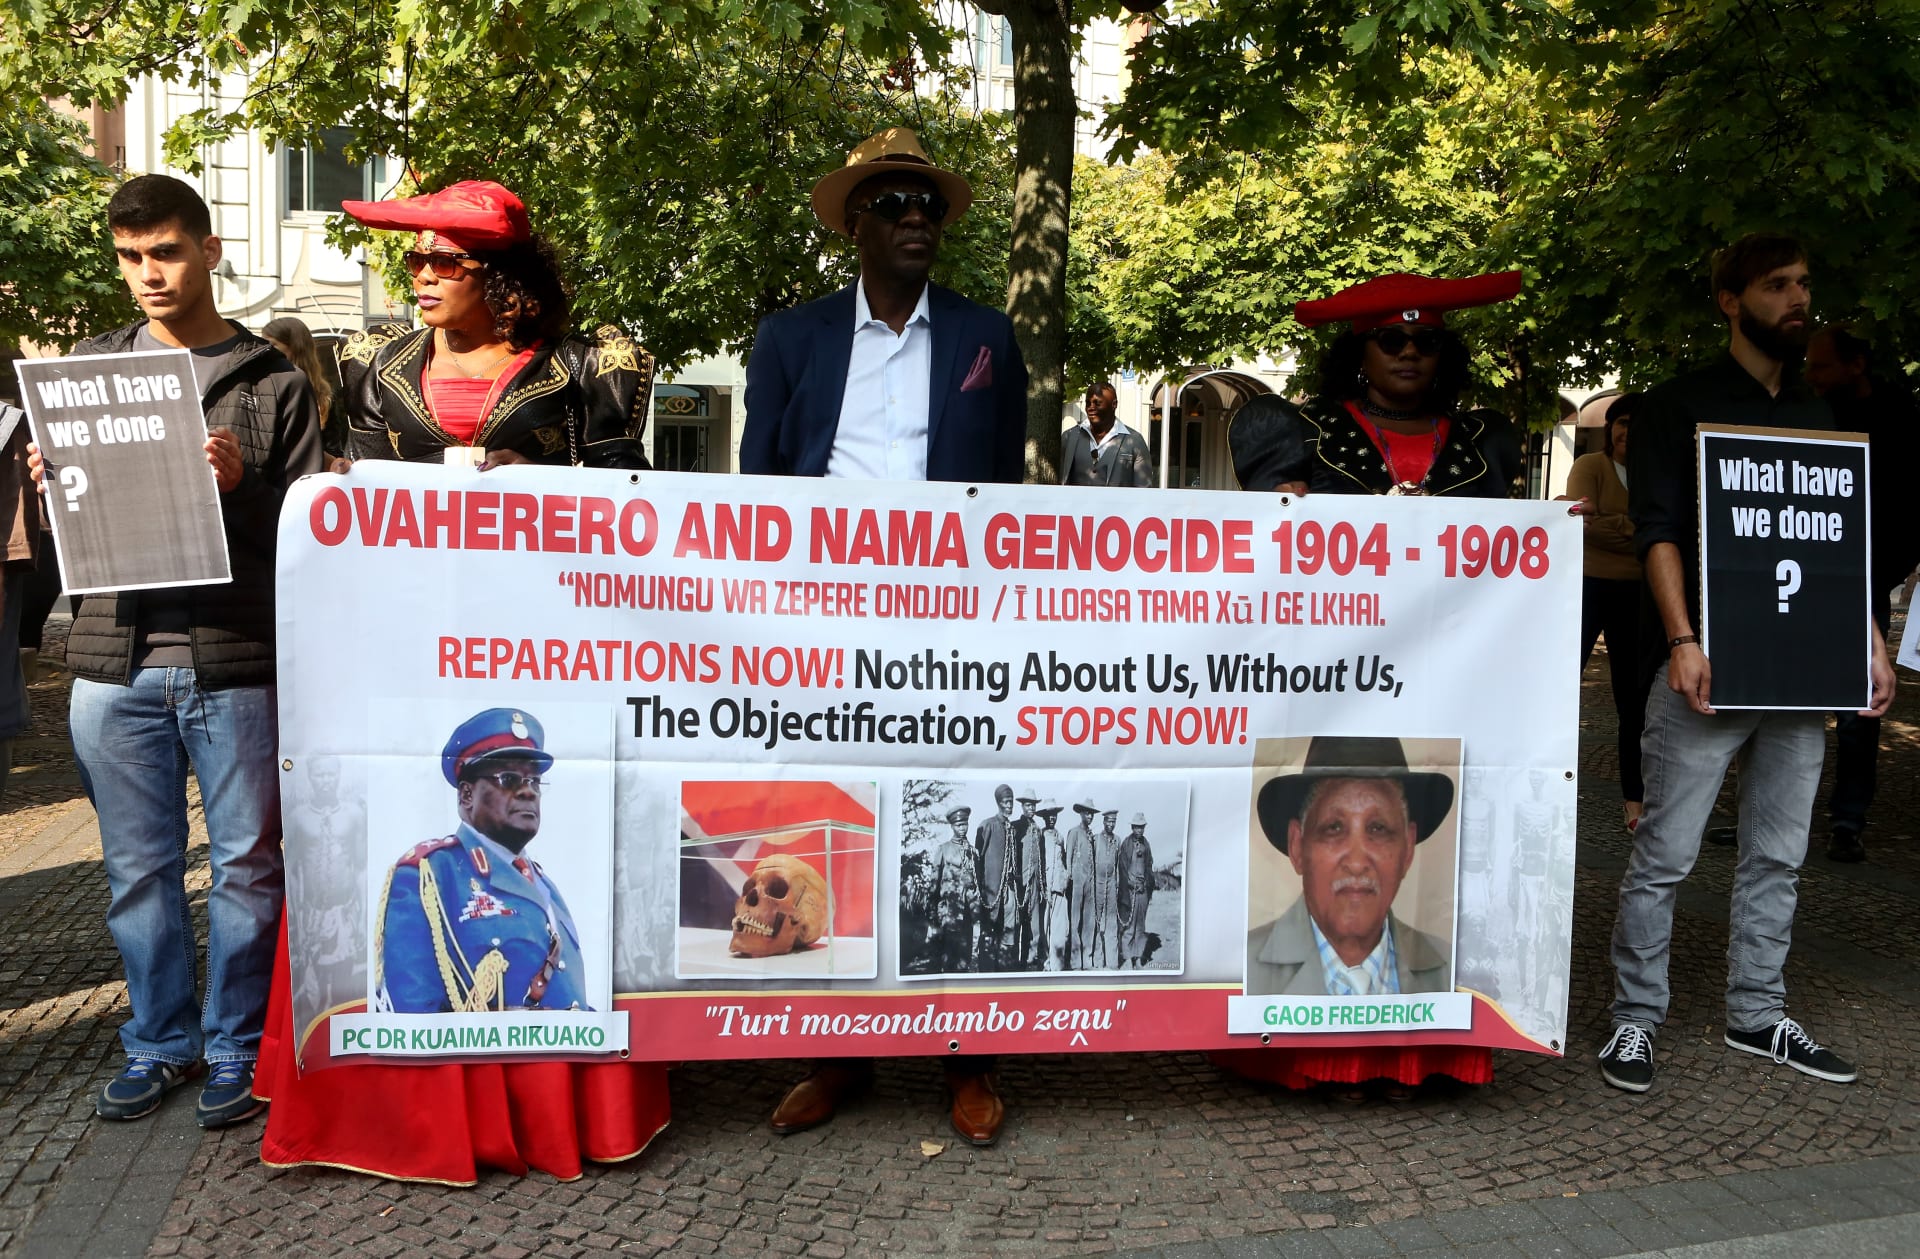 حضور وفد ناميبيا مراسم إعادة جماجم ناميبيا من الحملة القاتلة التي شنتها الإمبراطورية الألمانية في 1904-1908